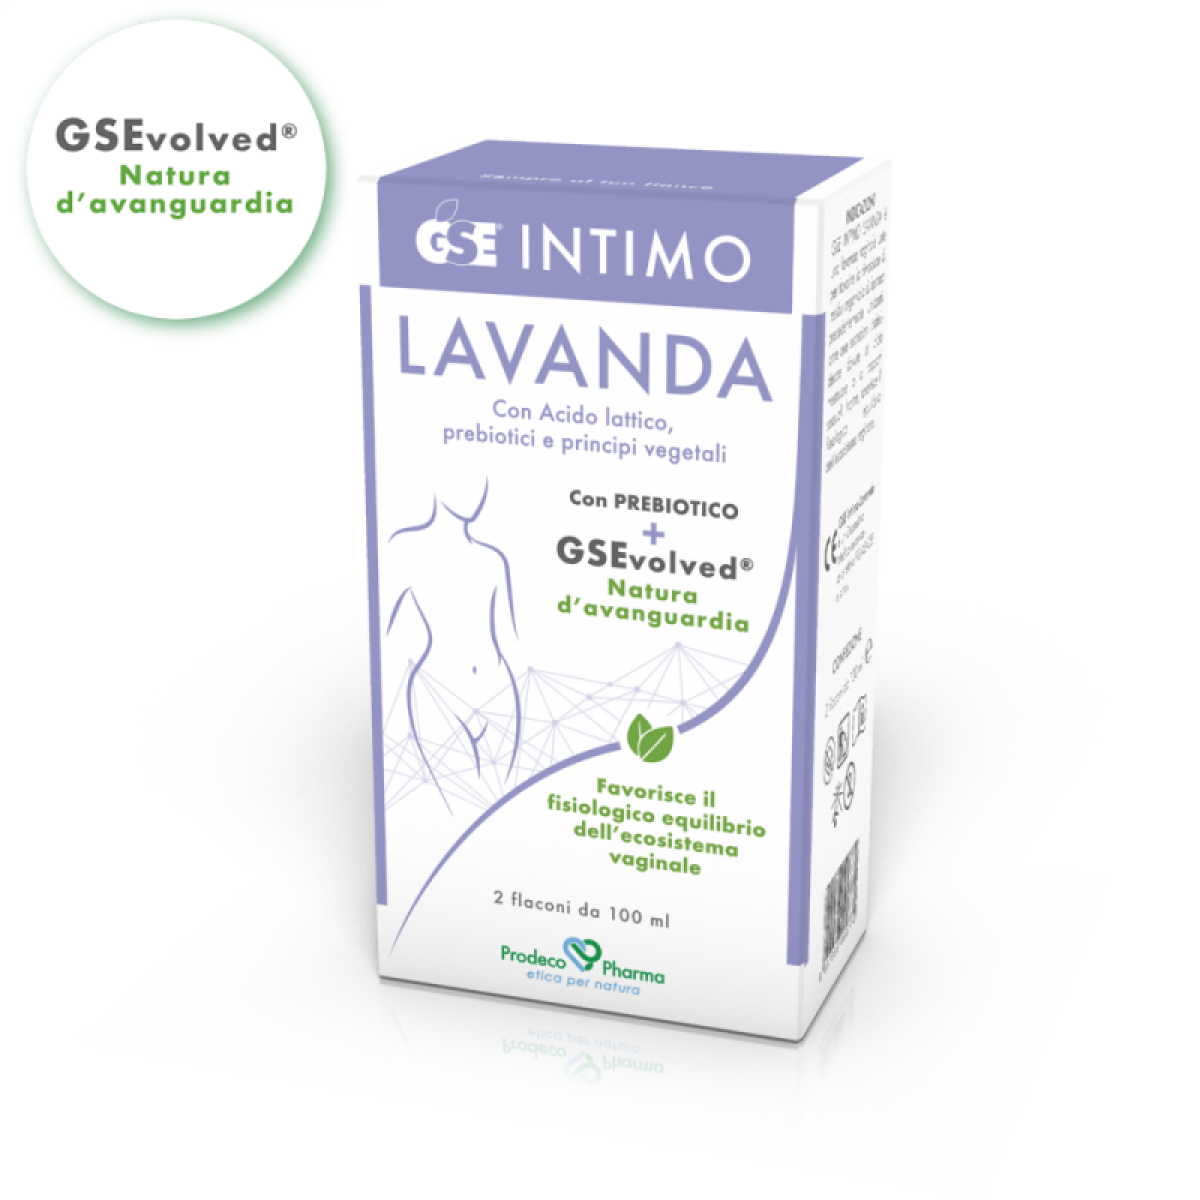 GSE Intimo Lavanda - 2 Lavande monouso - Prodeco Pharma Lavanda vaginale utile a contrastare e prevenire infezioni quali Candida o vaginiti. Confezione: 2 flaconi monodose da 100 ml.